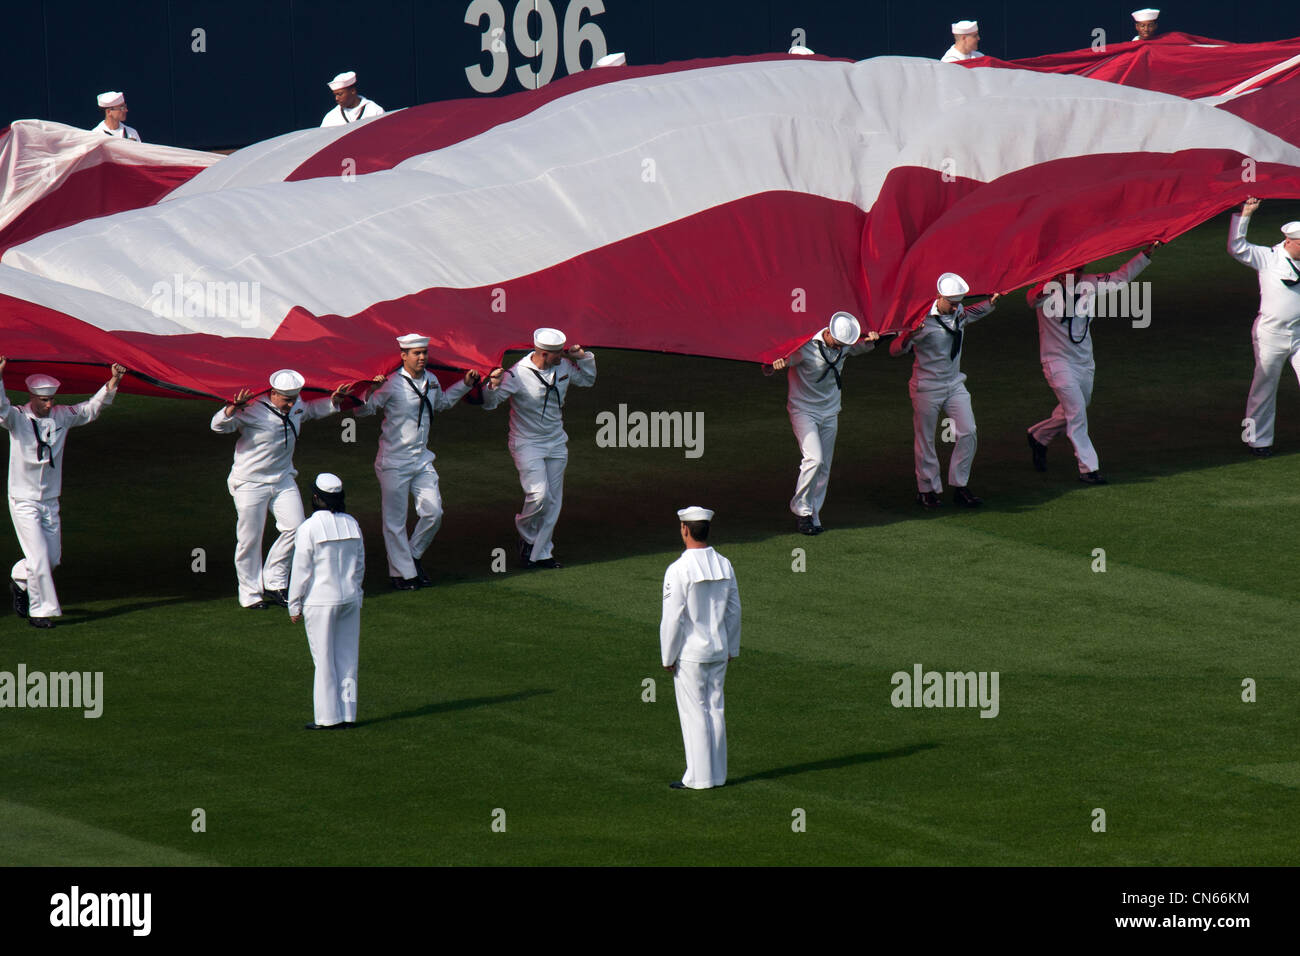 Des marins de la marine des États-Unis déploient un immense drapeau américain à l'ouverture des cérémonies du jour de la San Diego Padres au Petco Park. Banque D'Images